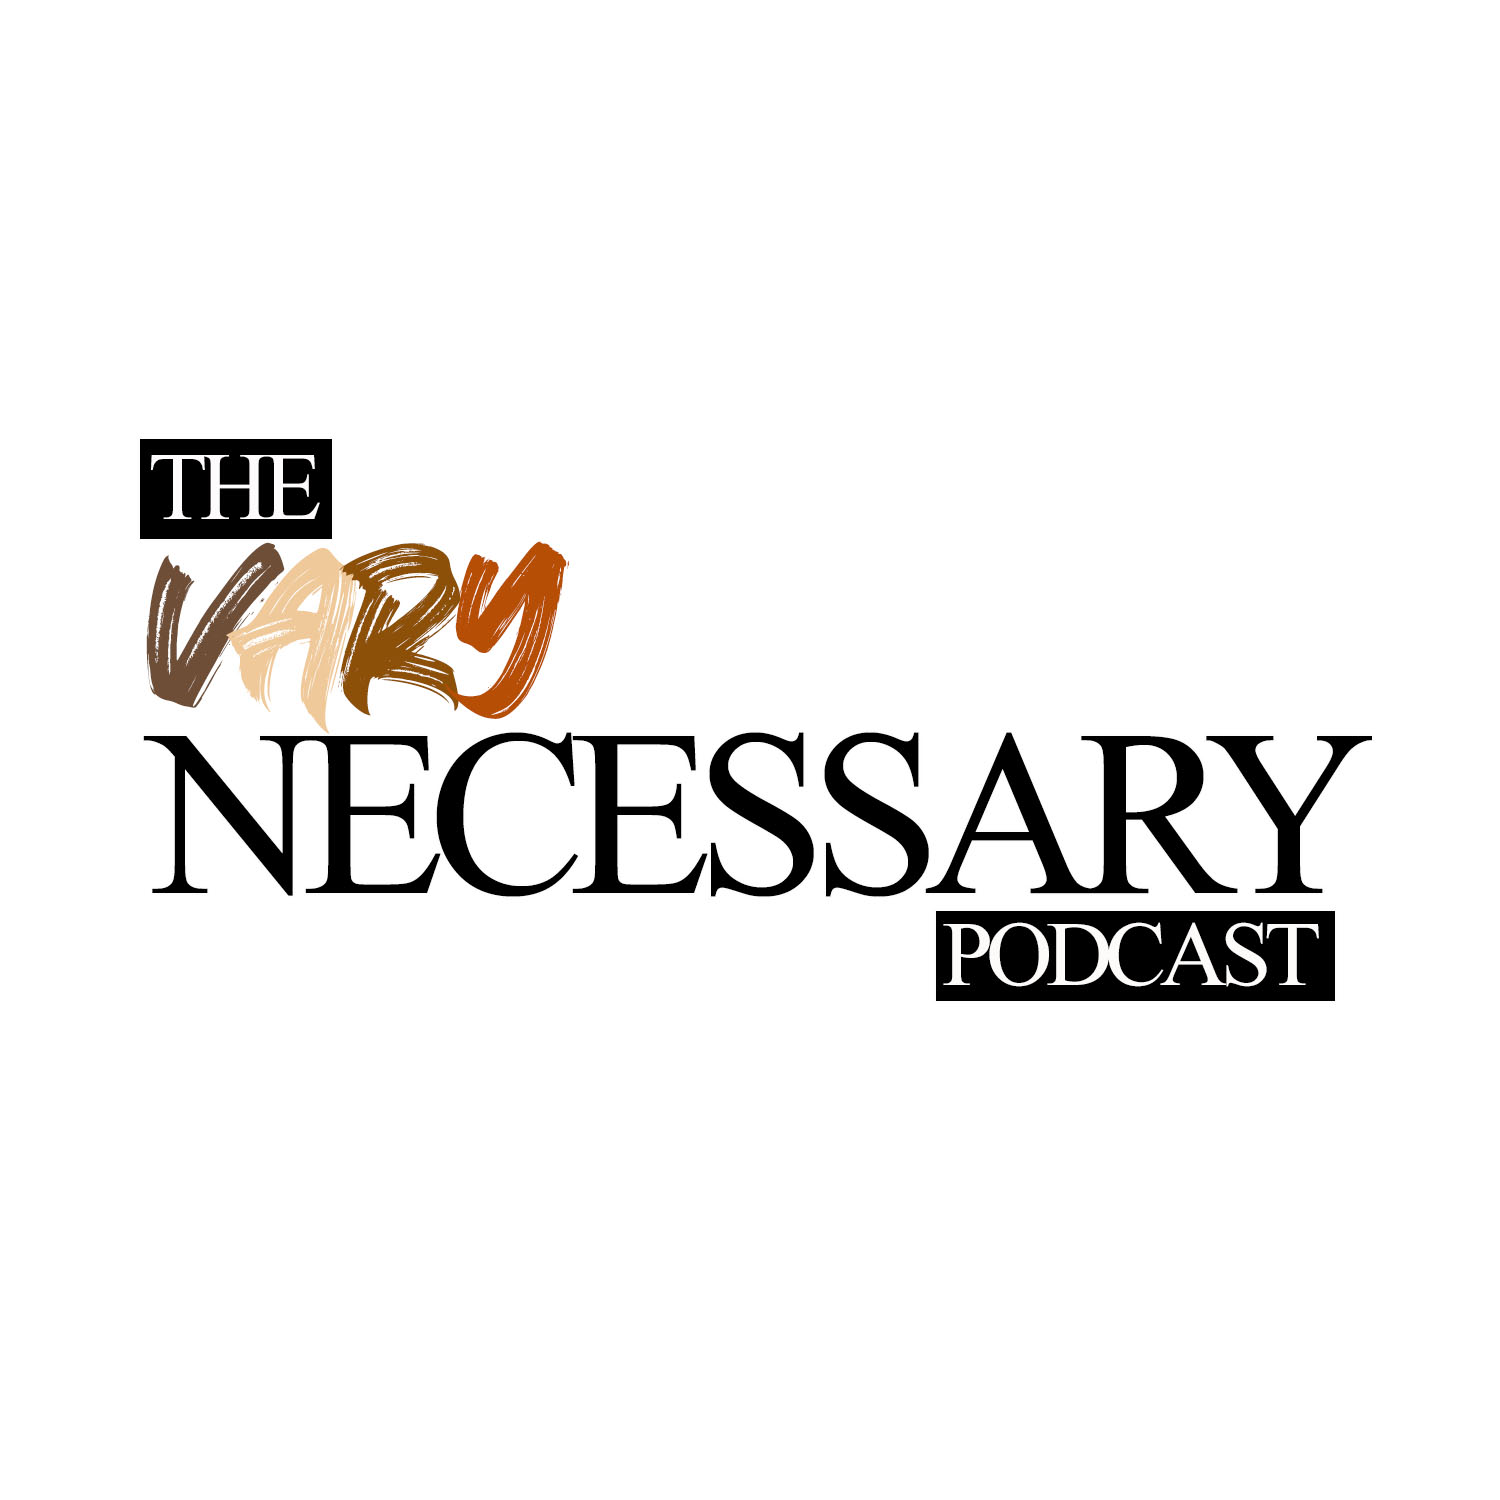 The Vary Necessary Podcast